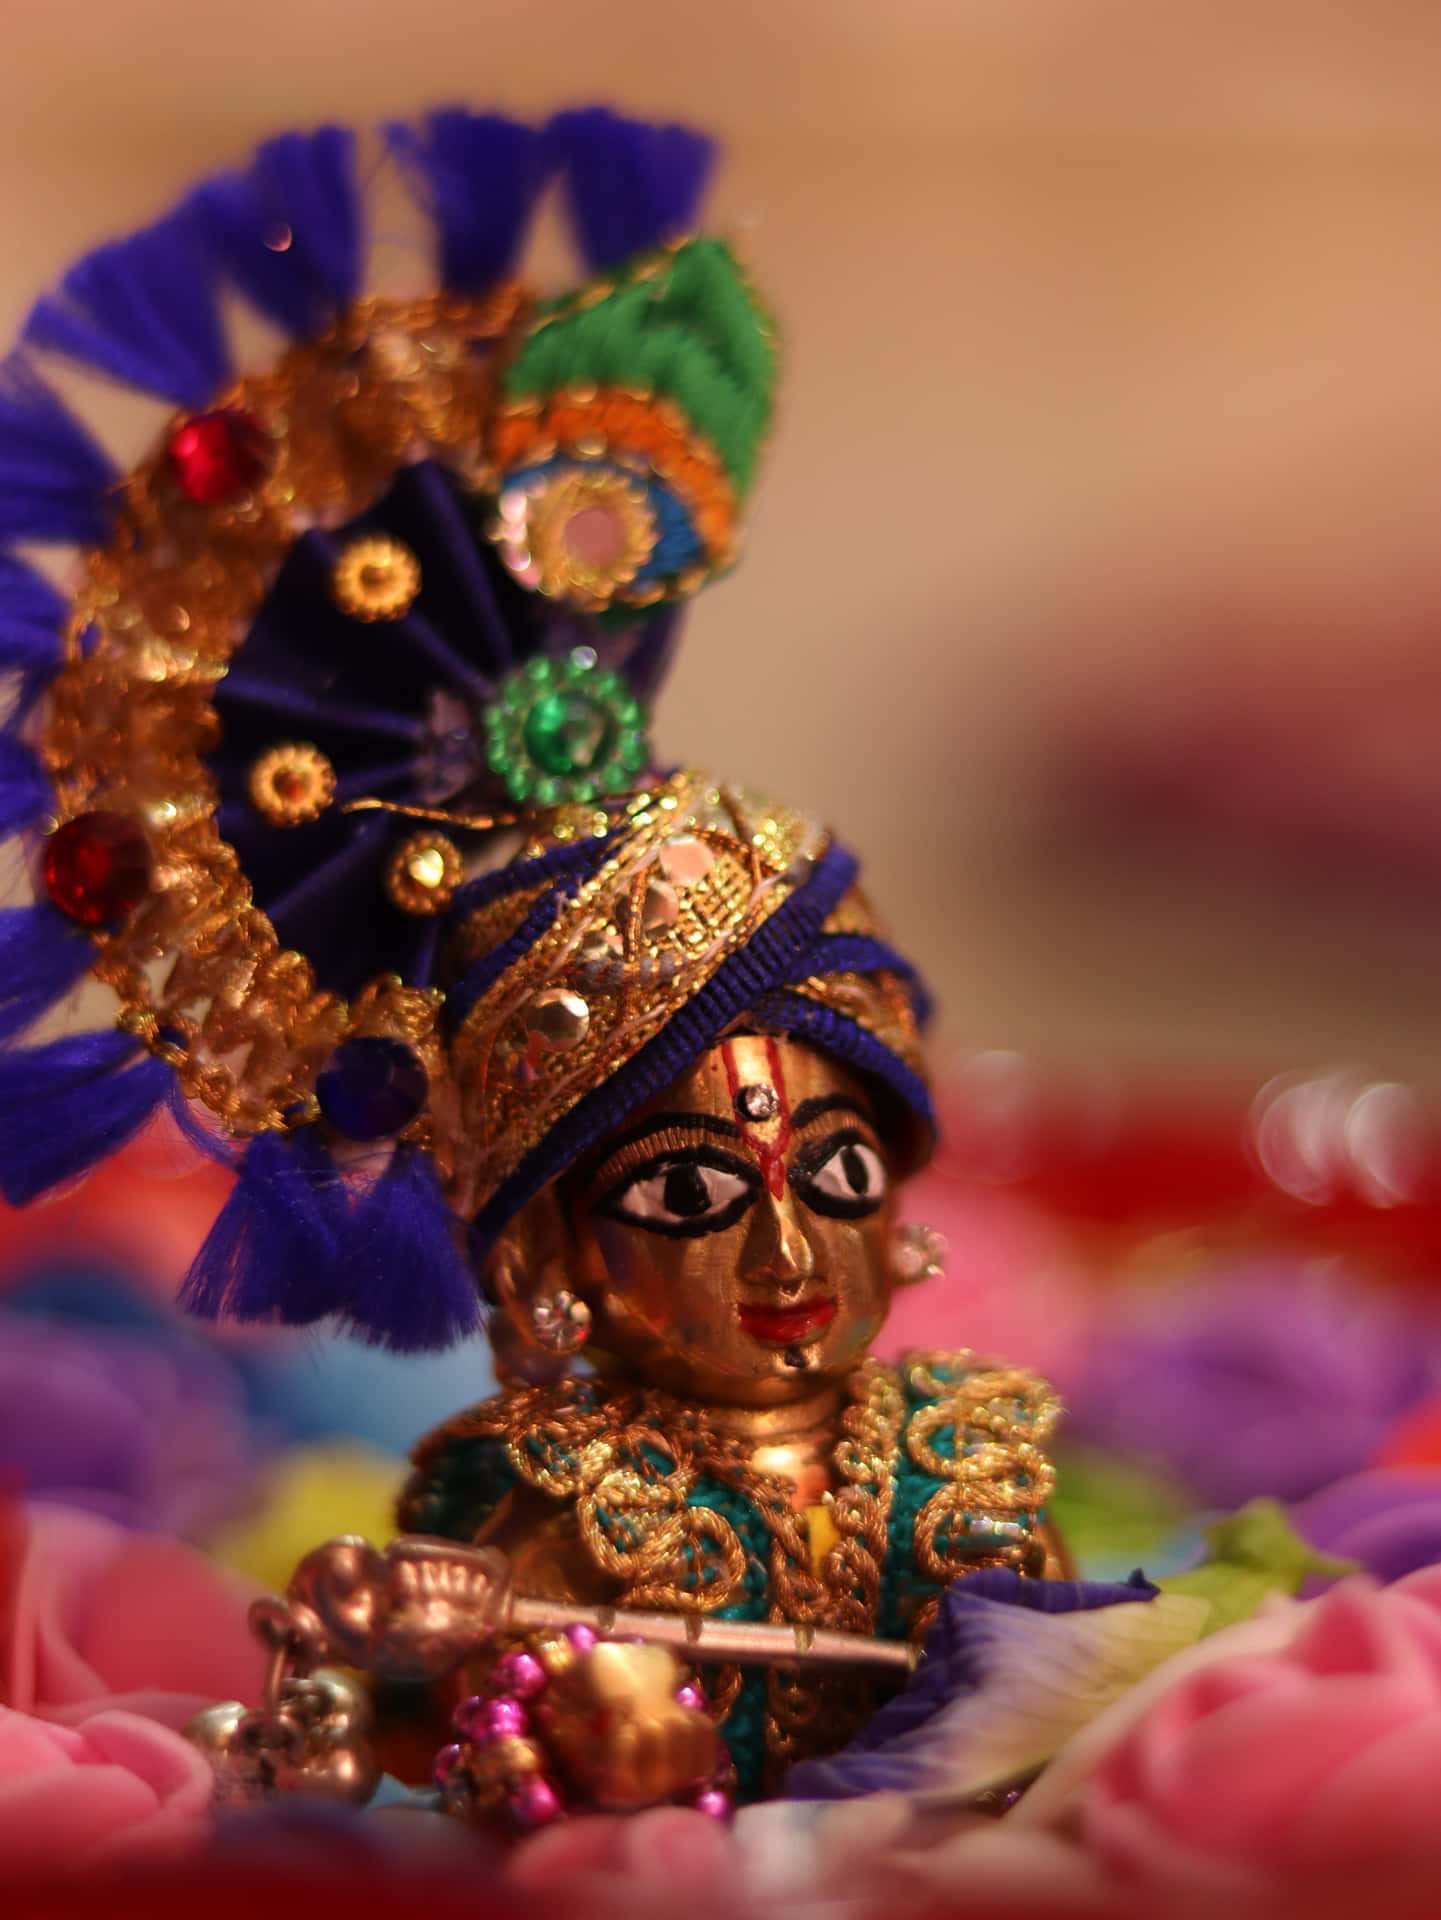 Lord Krishna dancing with joy